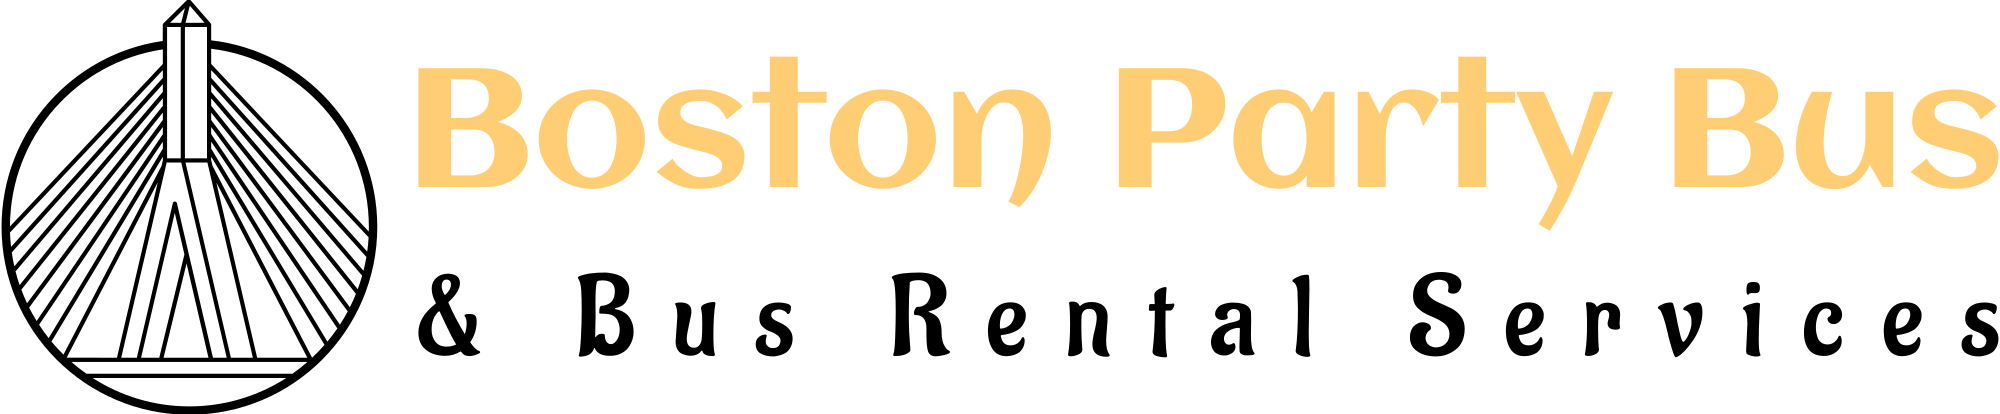 Boston Party Bus logo